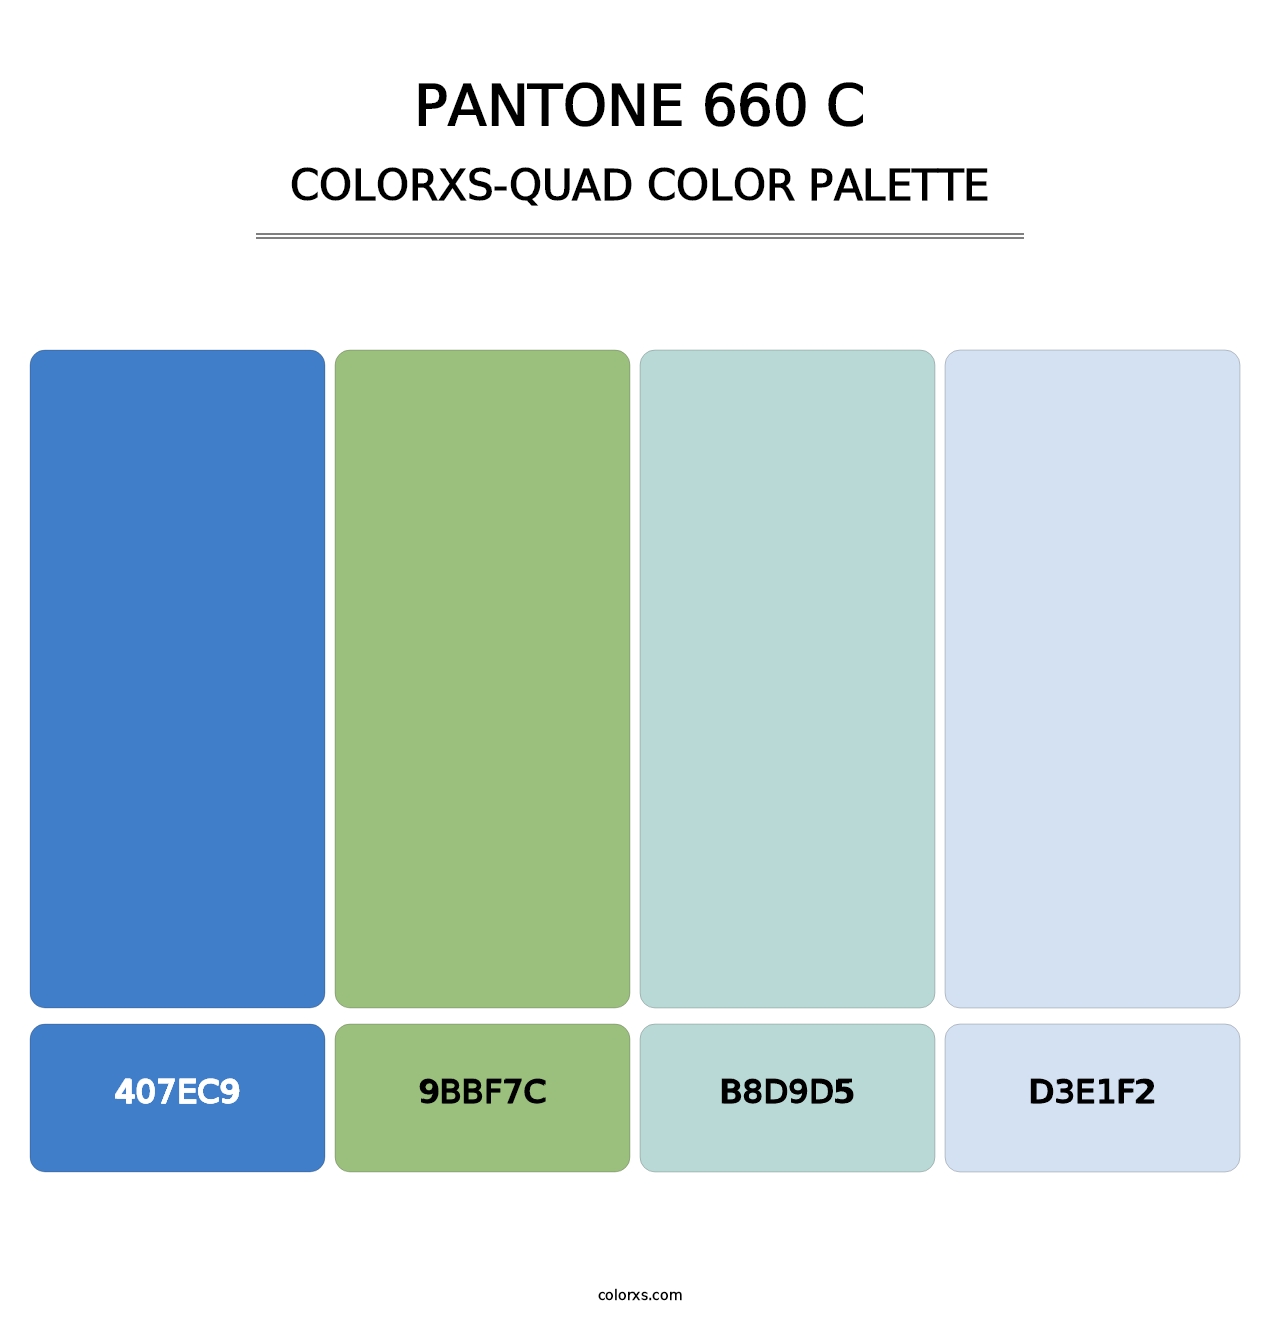 PANTONE 660 C - Colorxs Quad Palette